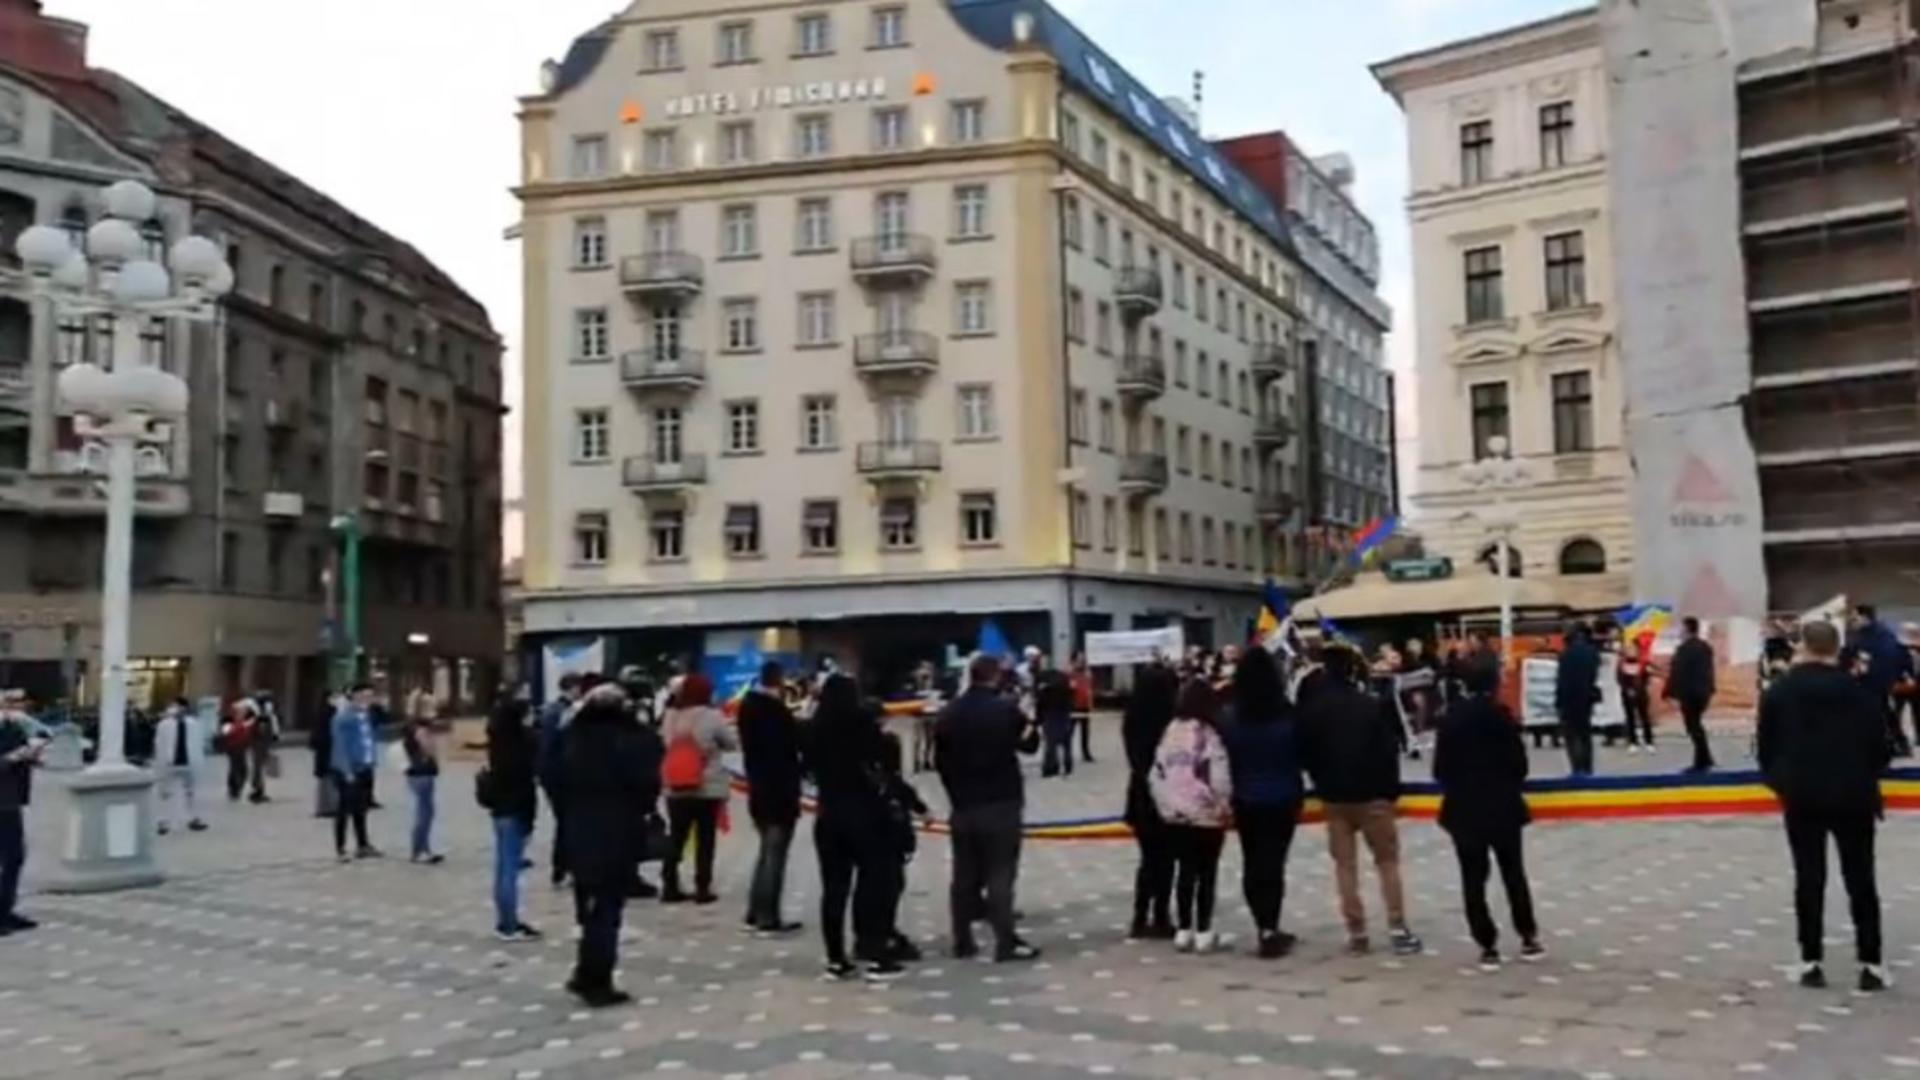 Restricțiile impuse de autorități, primite cu proteste la Timișoara